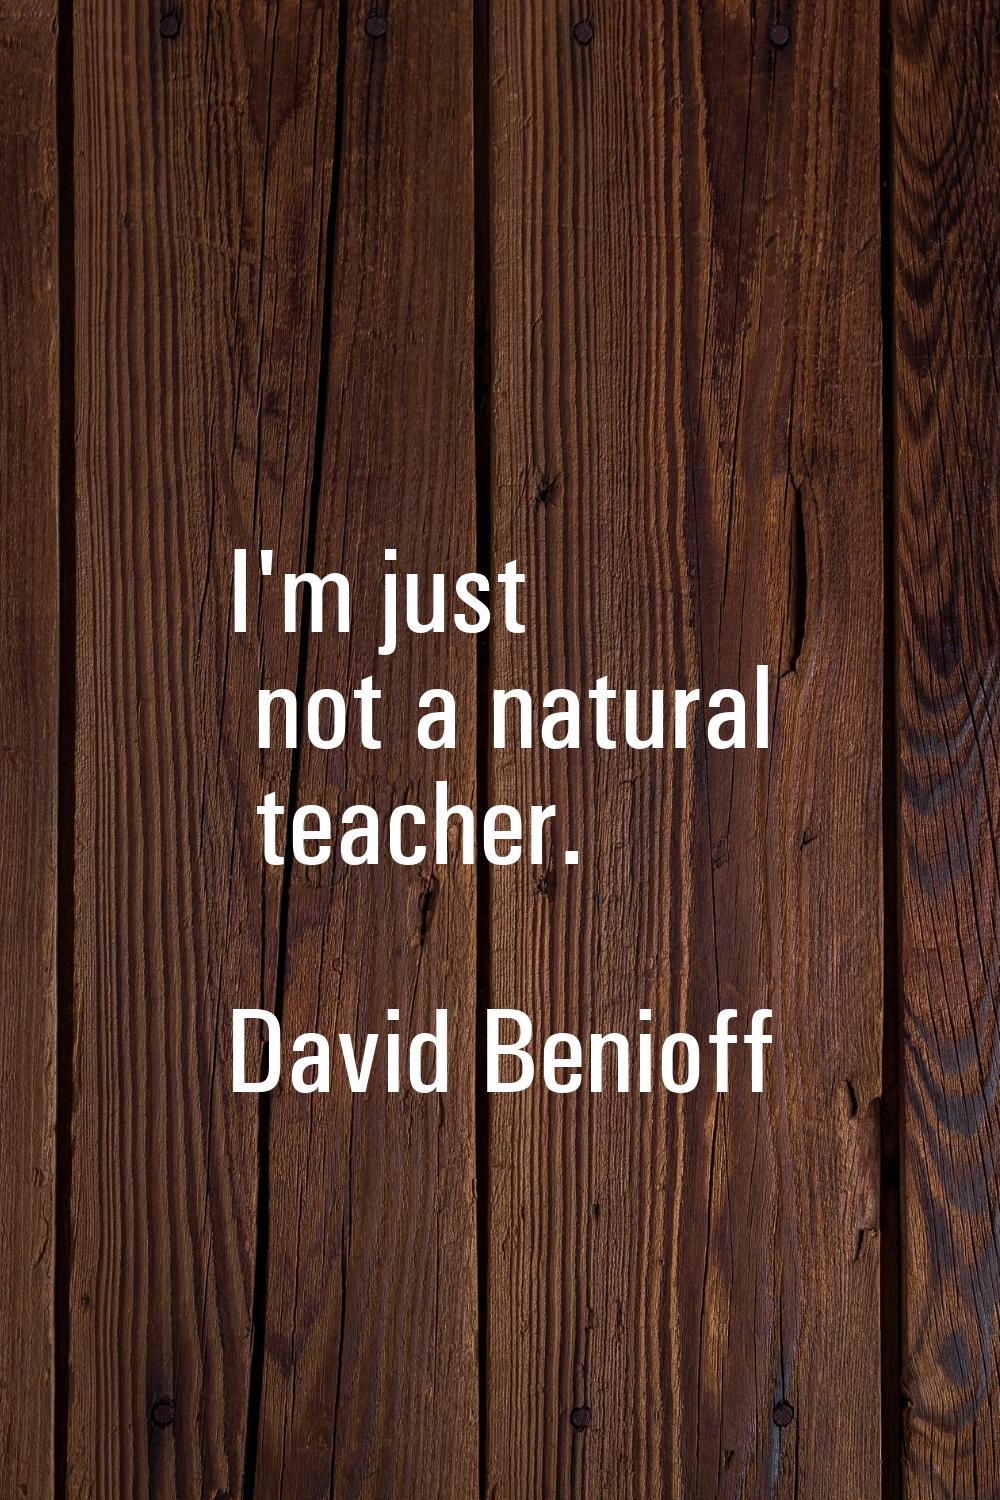 I'm just not a natural teacher.